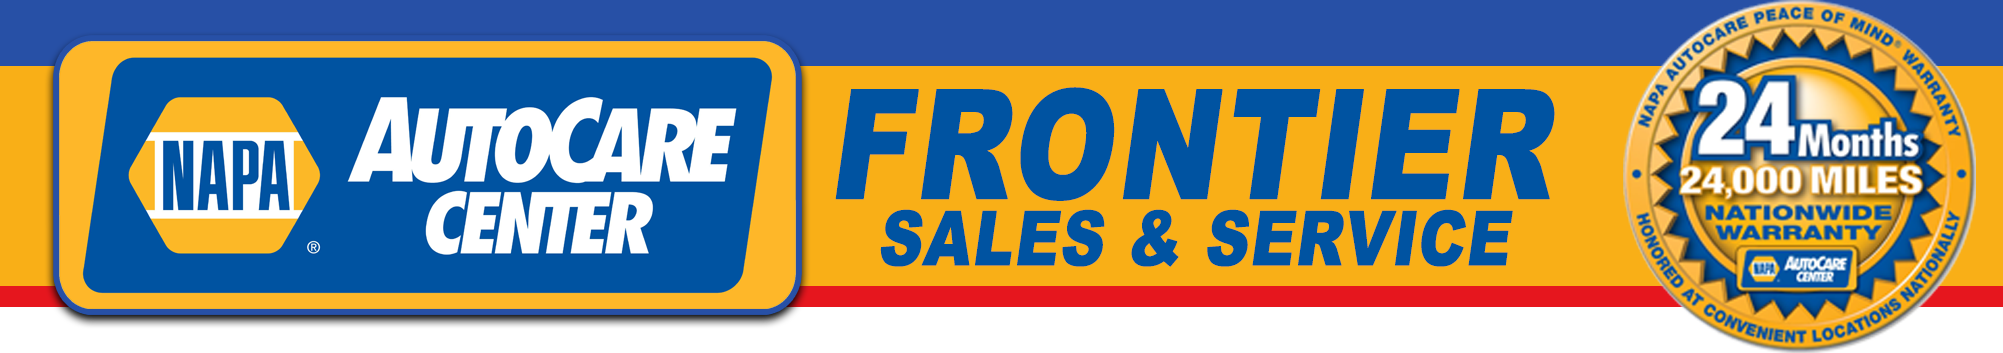 Frontier Auto Sales Logo